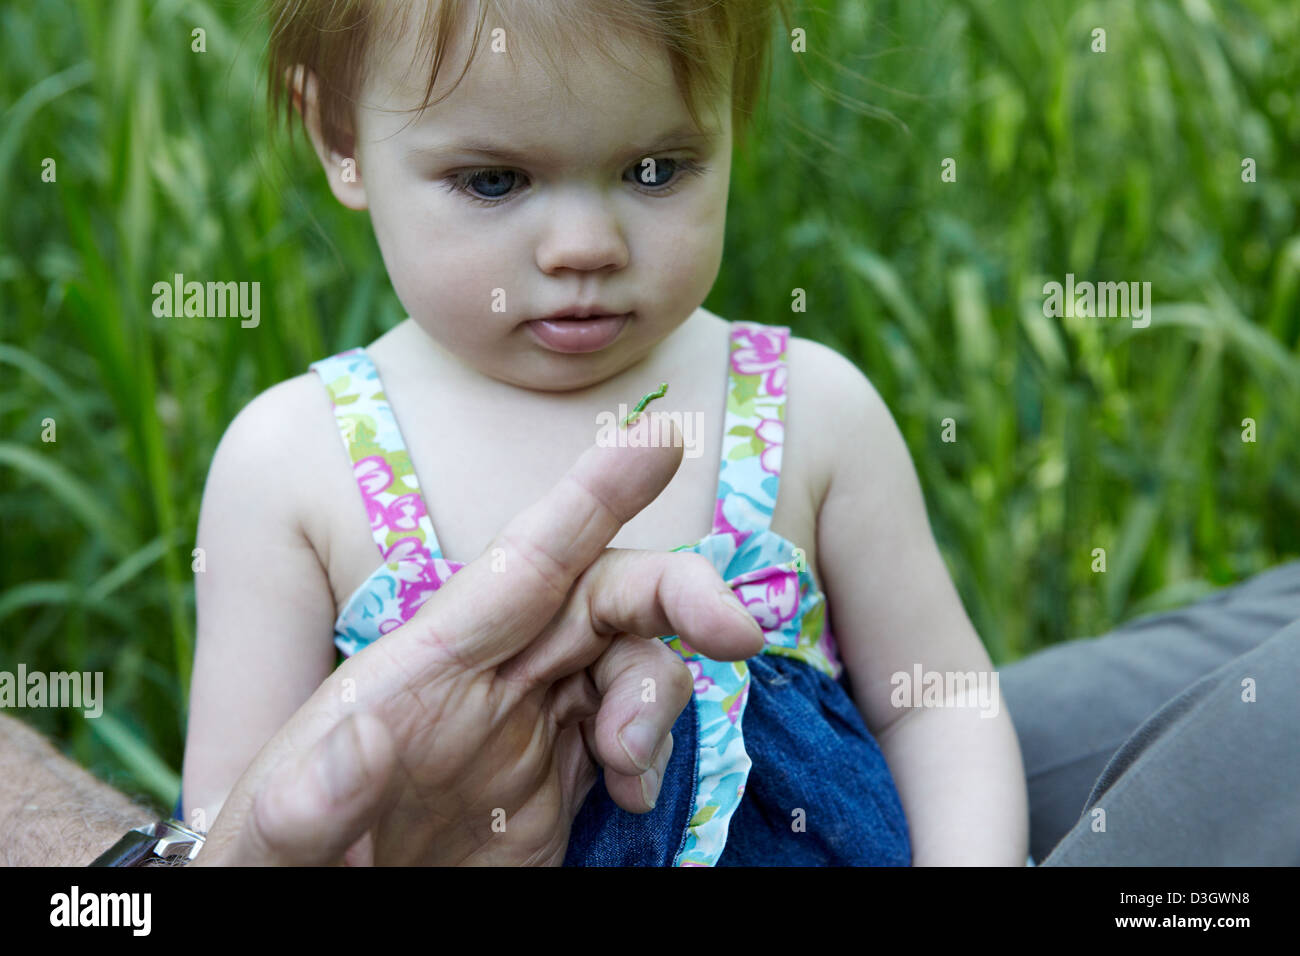 1 anno vecchia ragazza guarda al green caterpillar Foto Stock